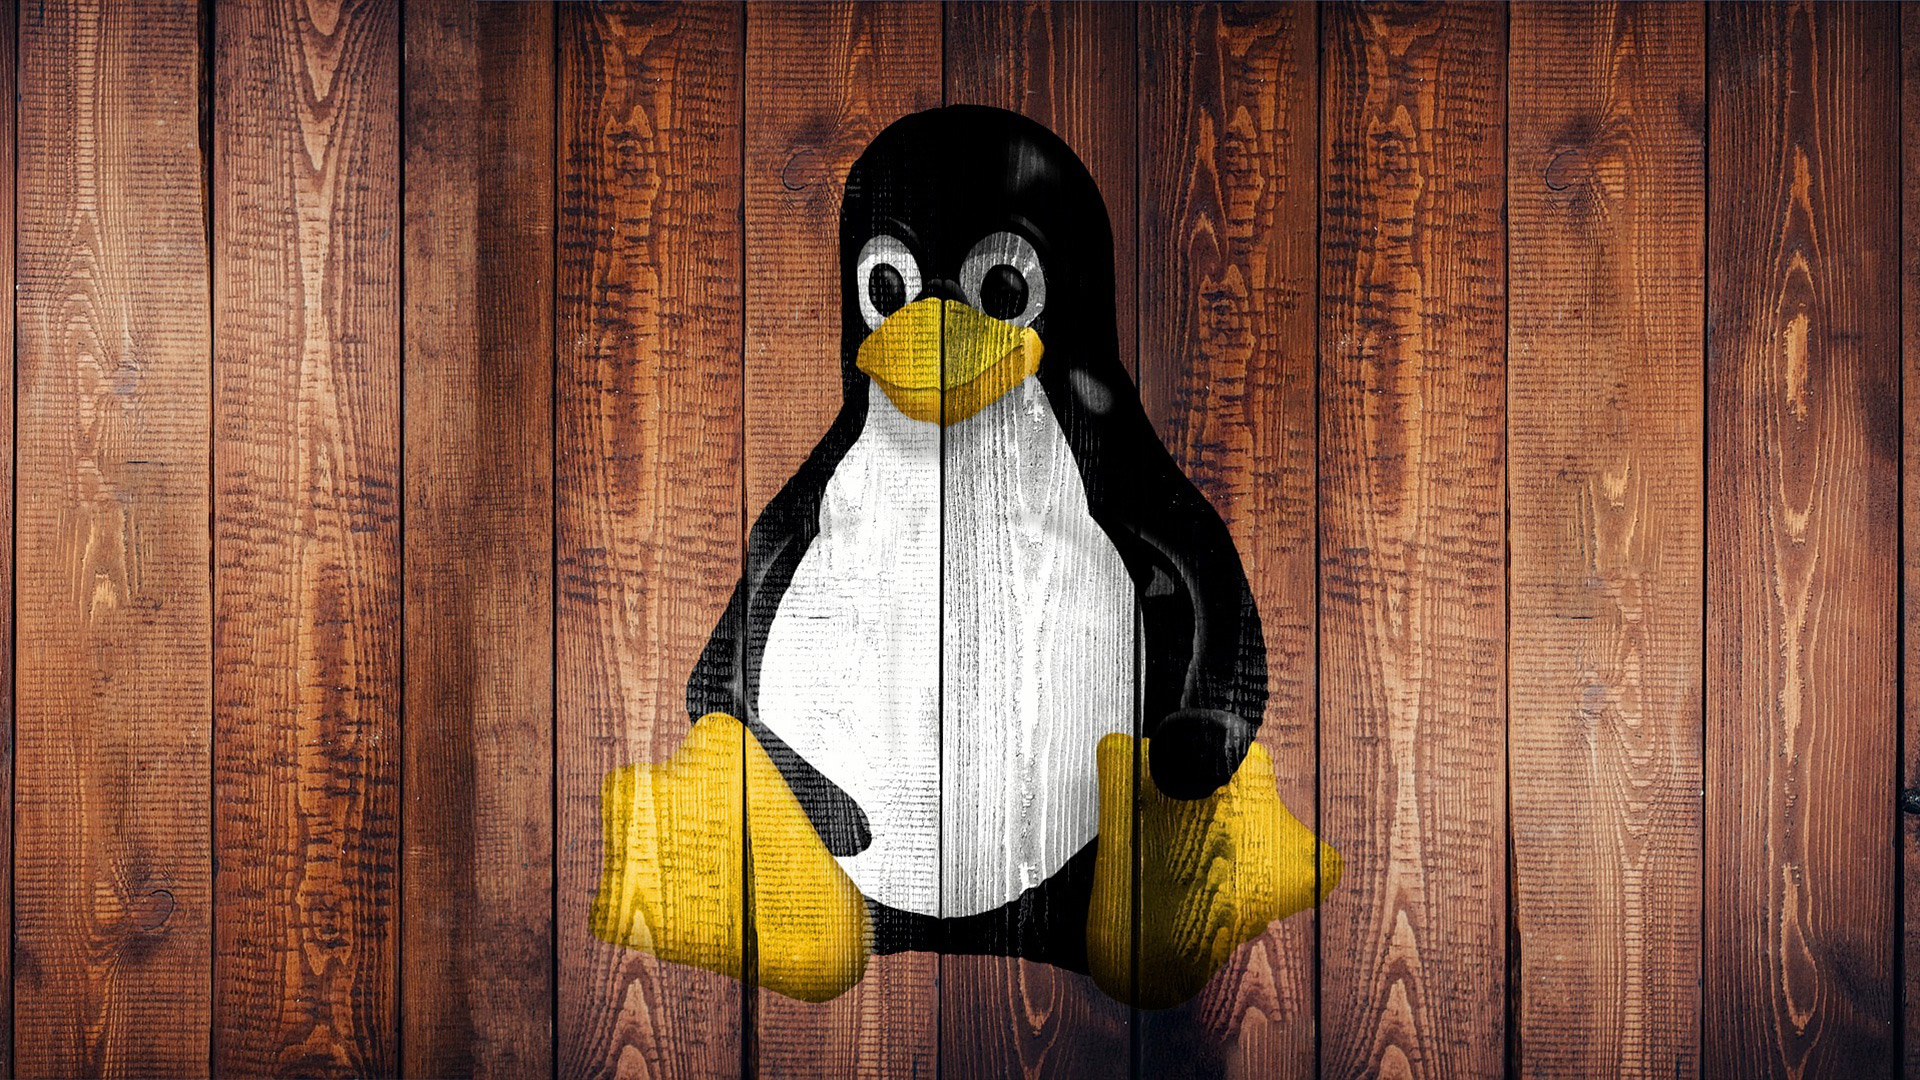 Linux nå i 3 % av stasjonære datamaskiner